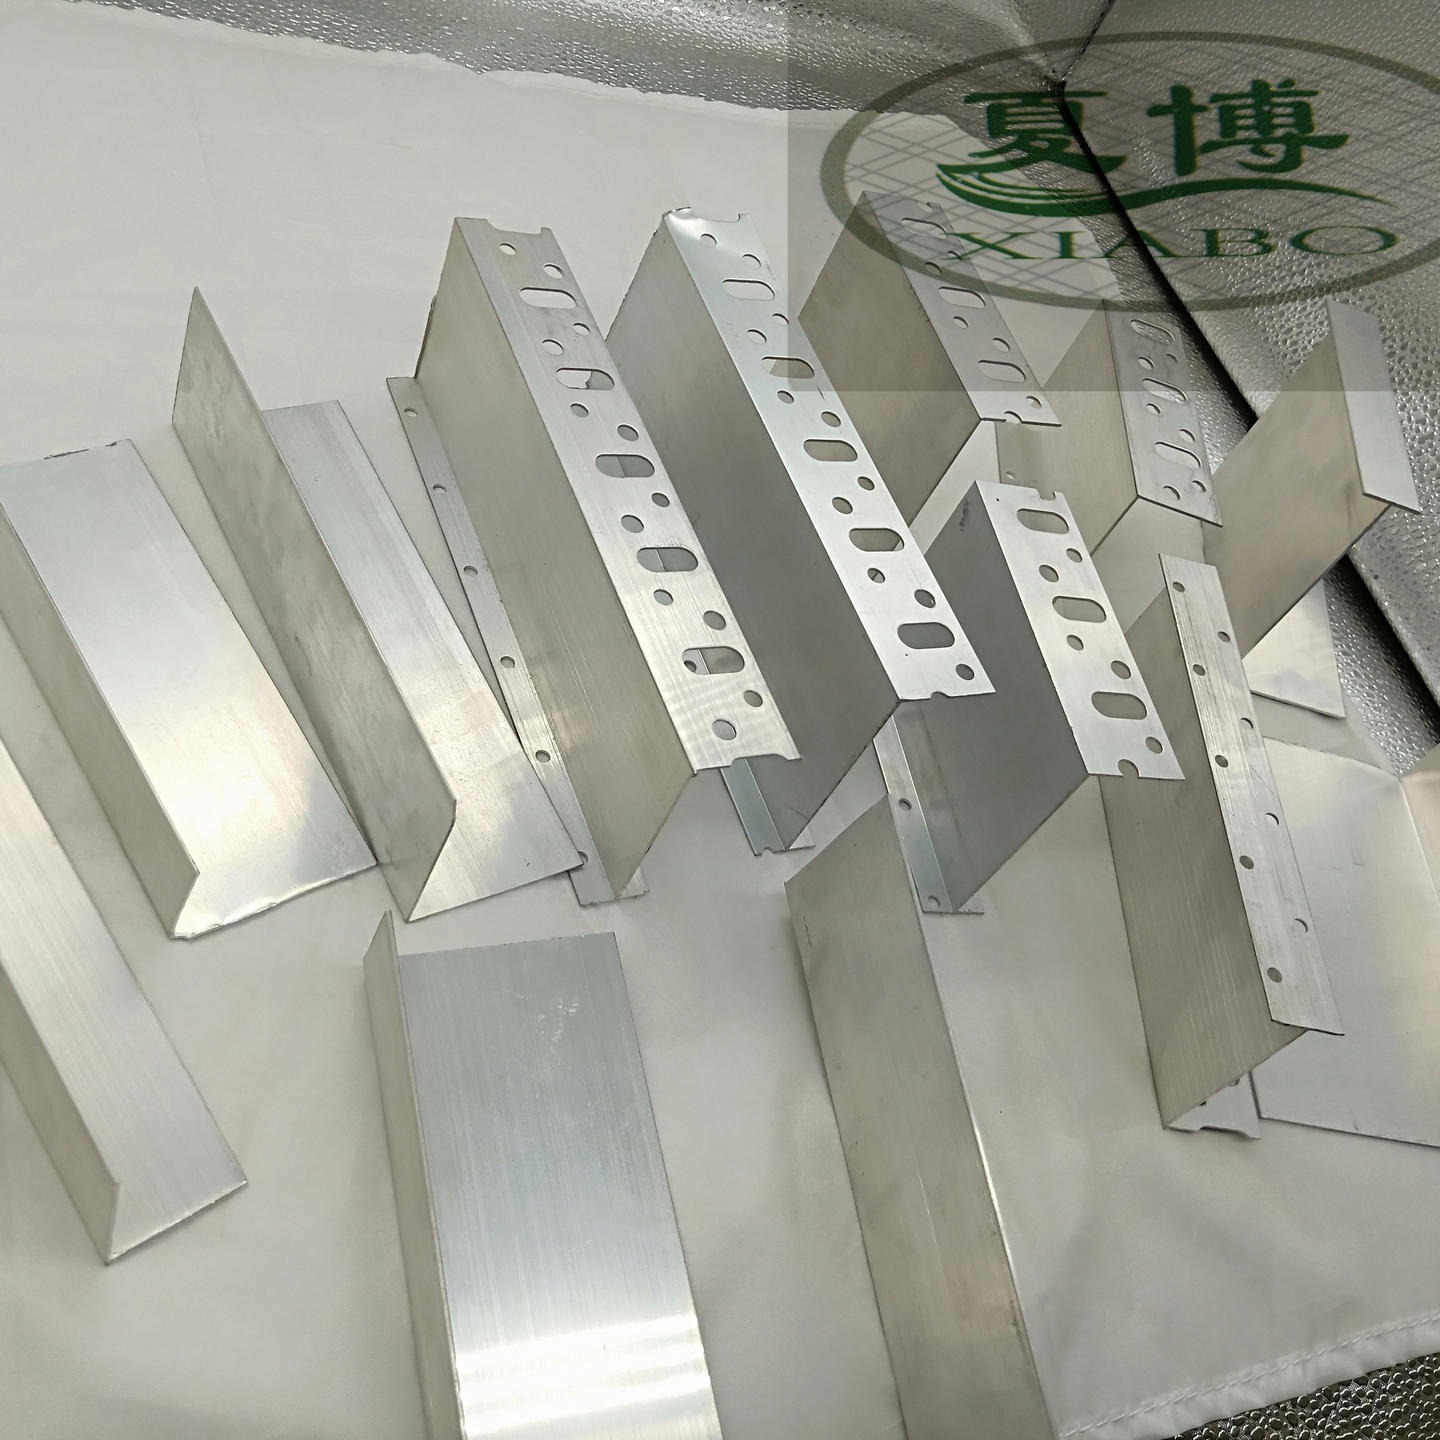 夏博生产直销优质铝合金托架 外墙托架适用范围